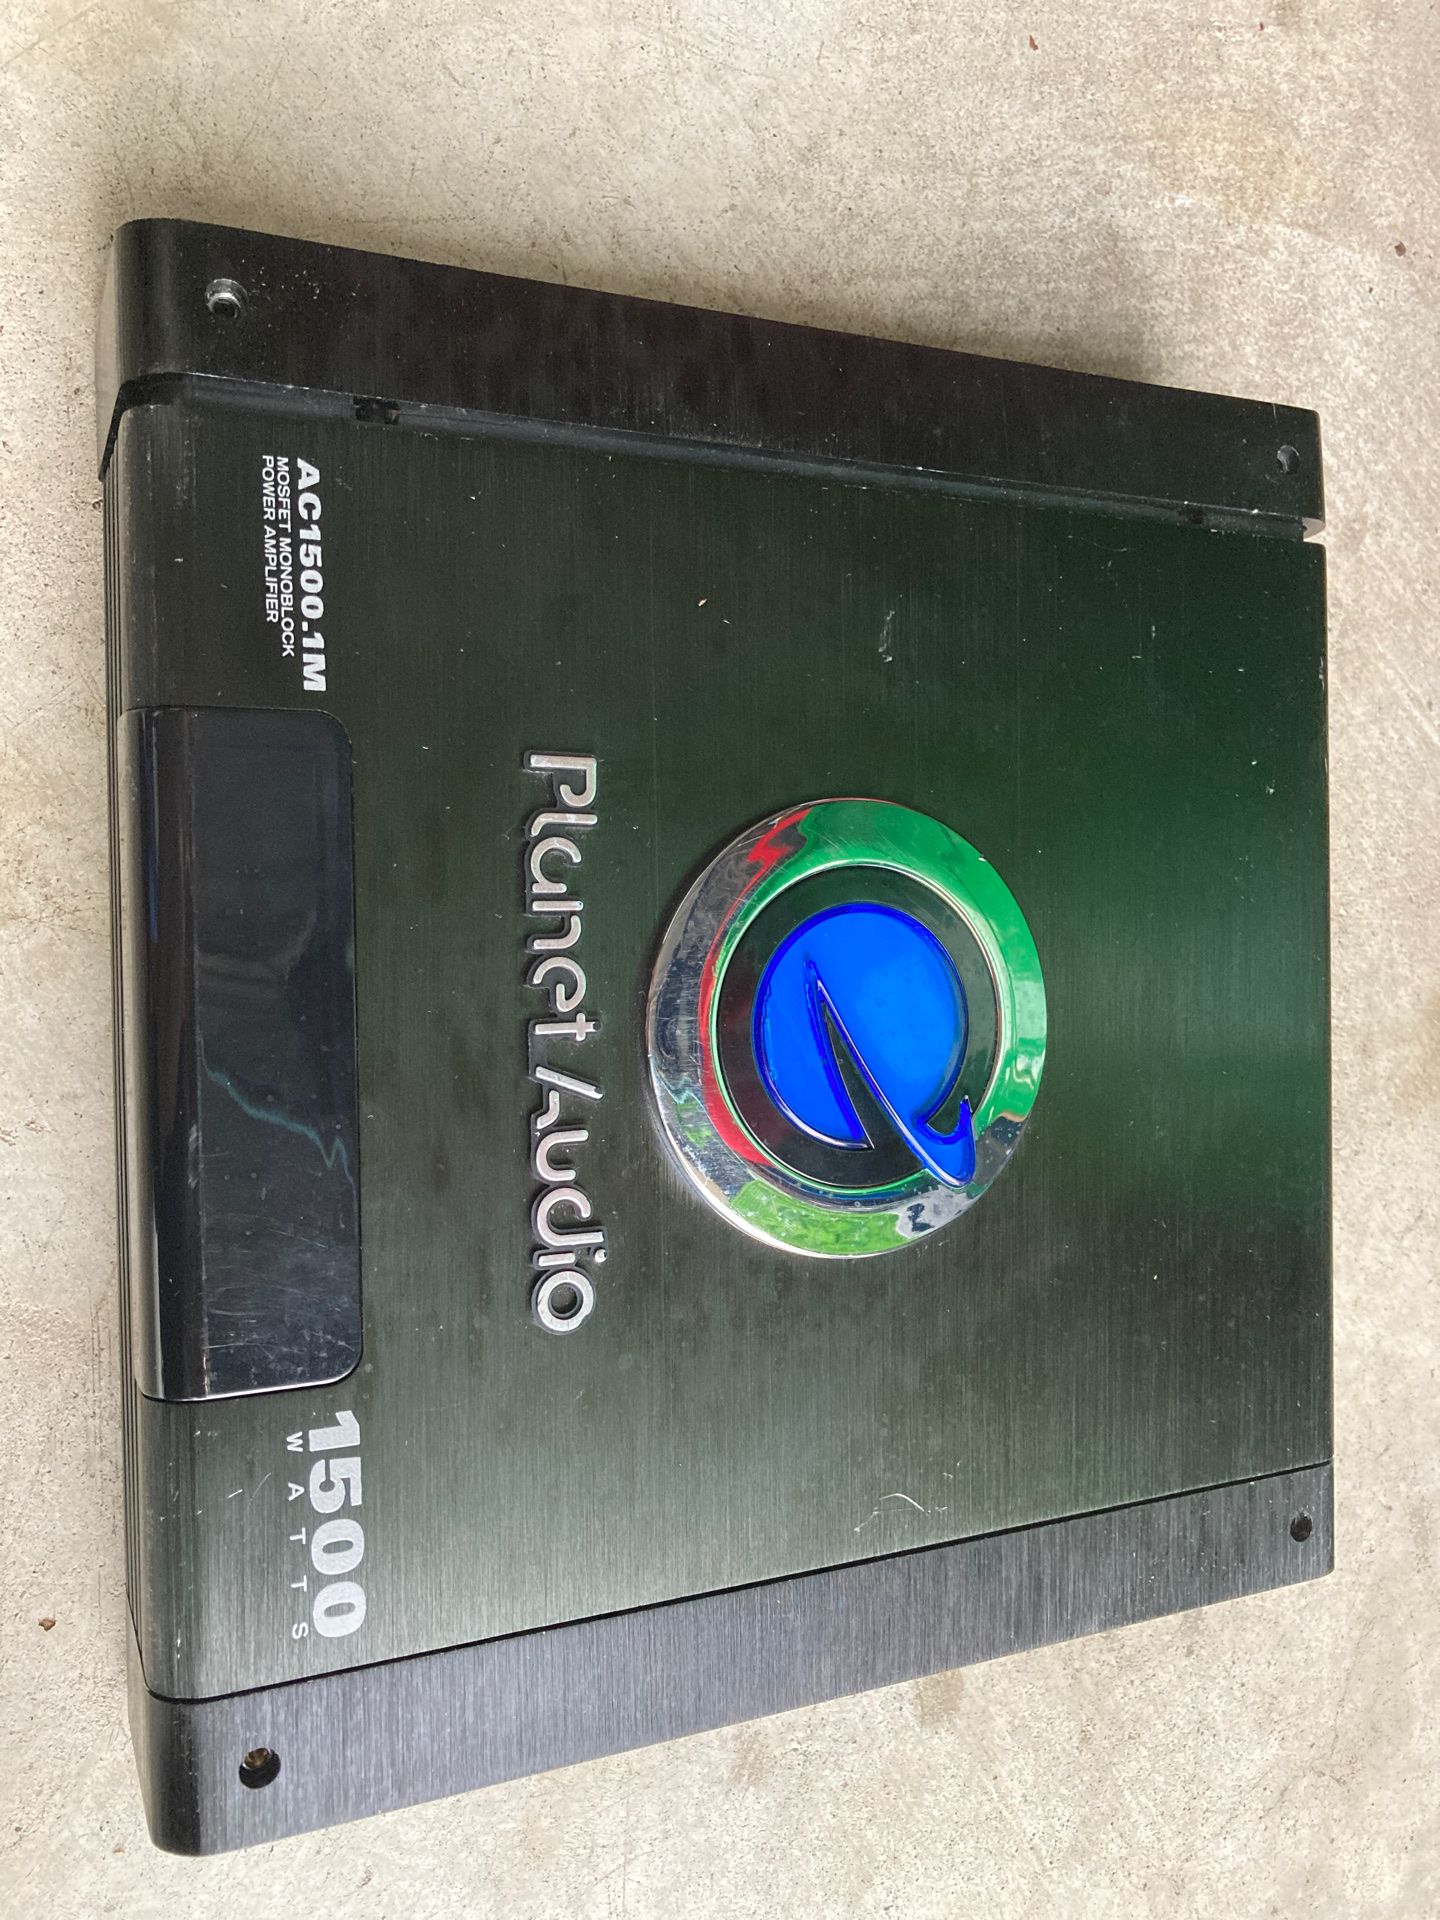 Planet audio amplifier 1500 W monobloc